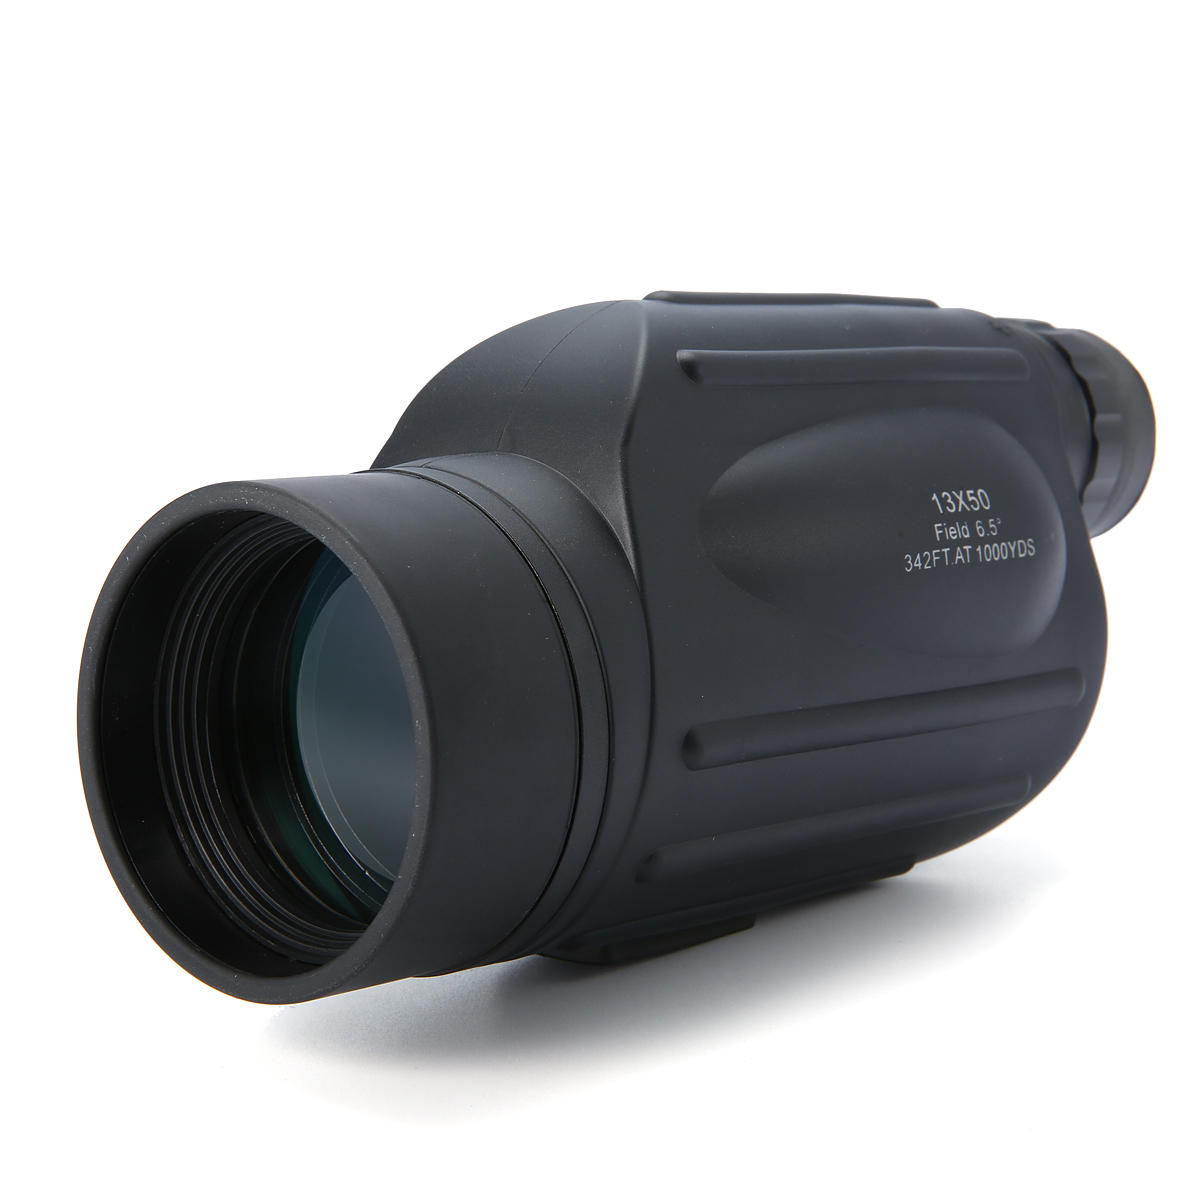 13x50 Handy Monocular Scope étanche anti-brouillard télescope de mise au point pour les sports de plein air Birdwatching